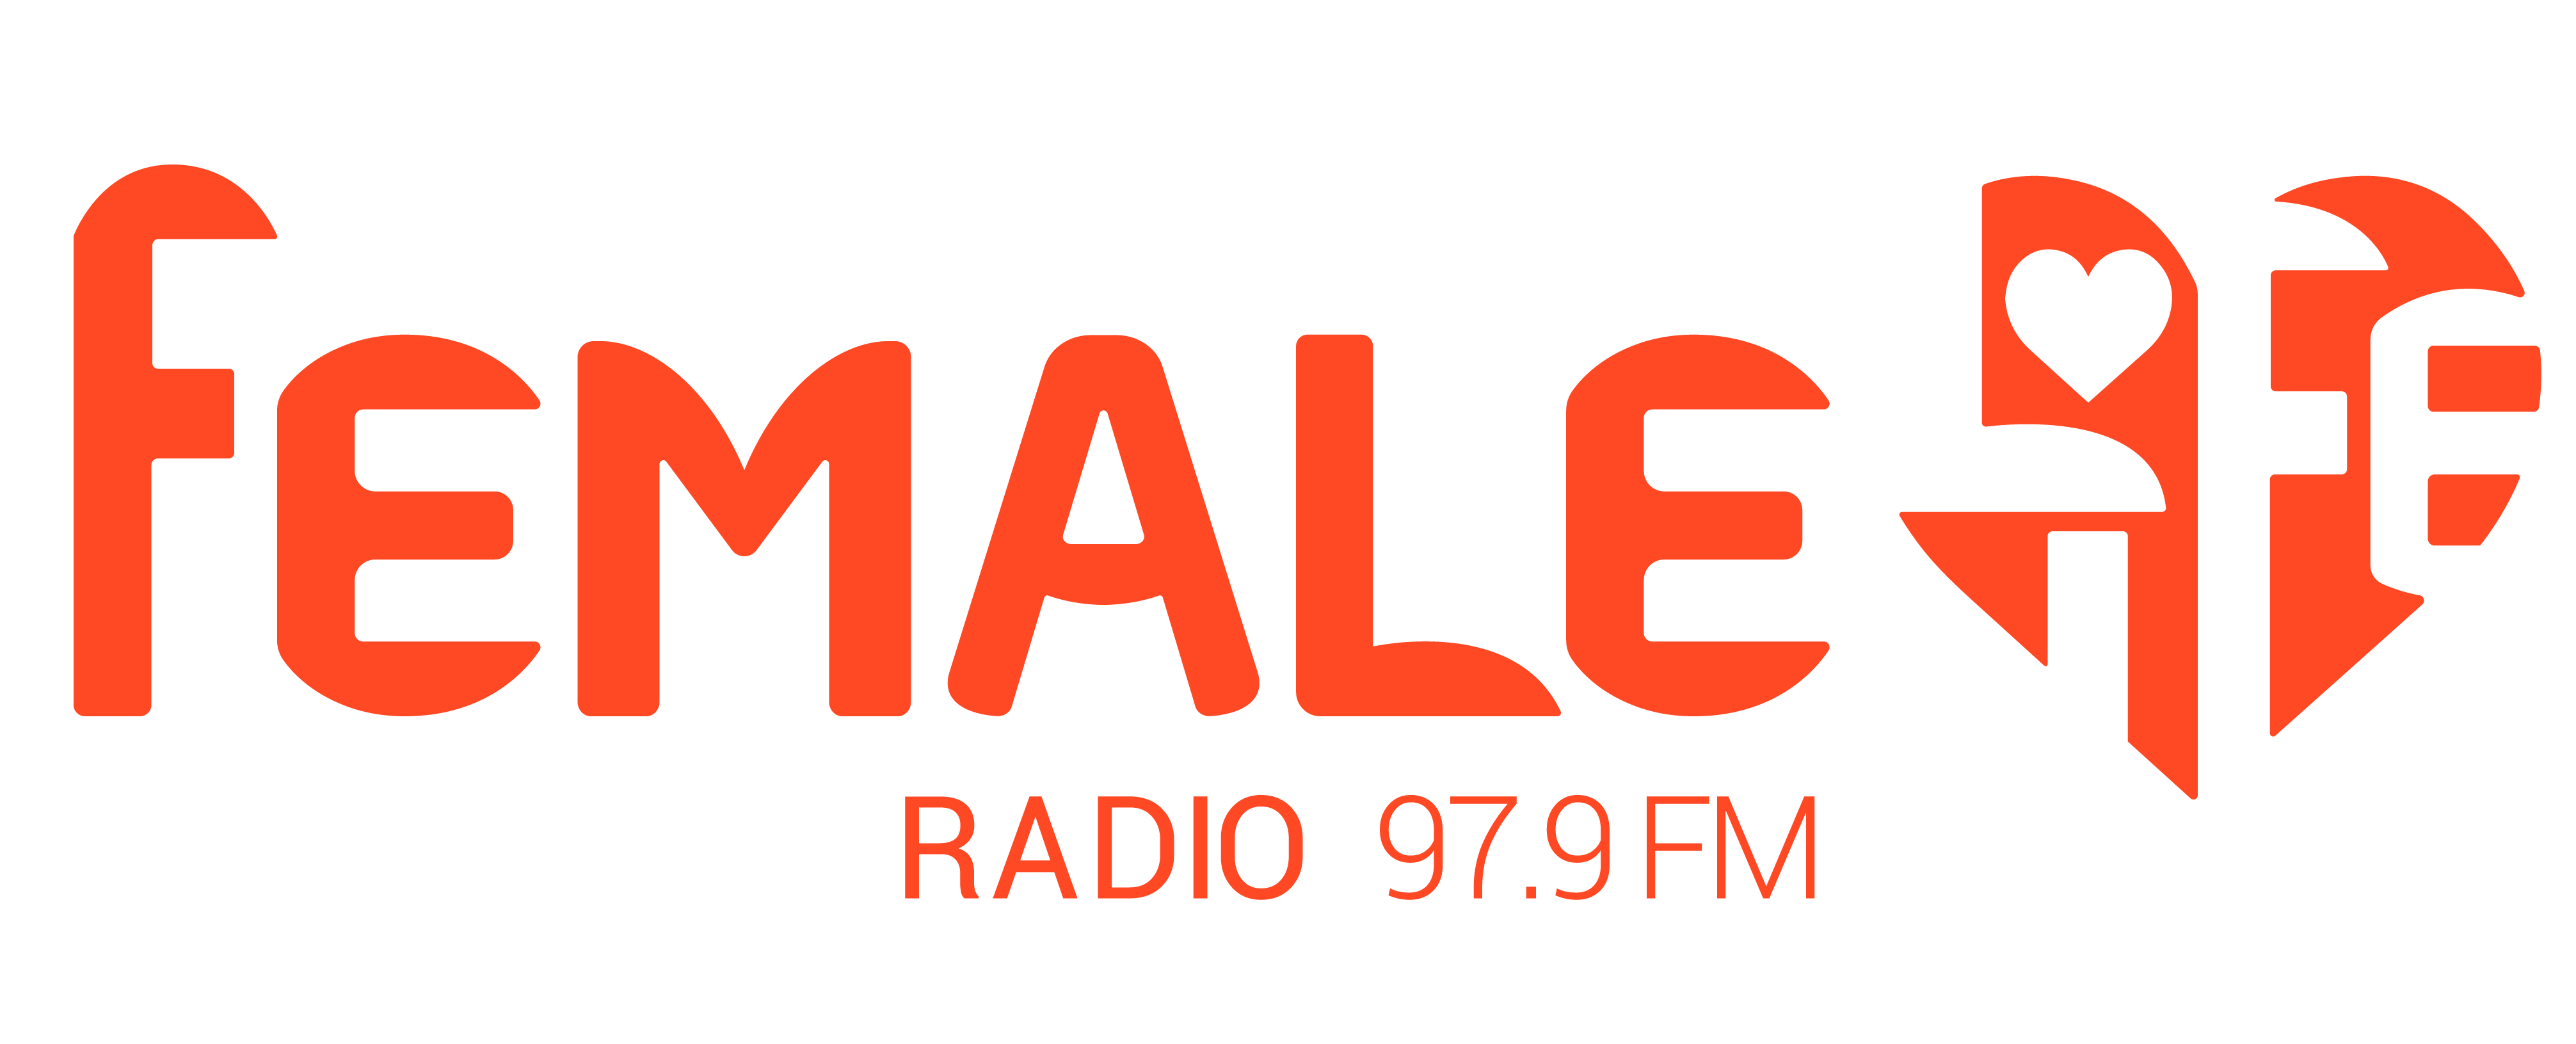 Female Radio 97.9 FM